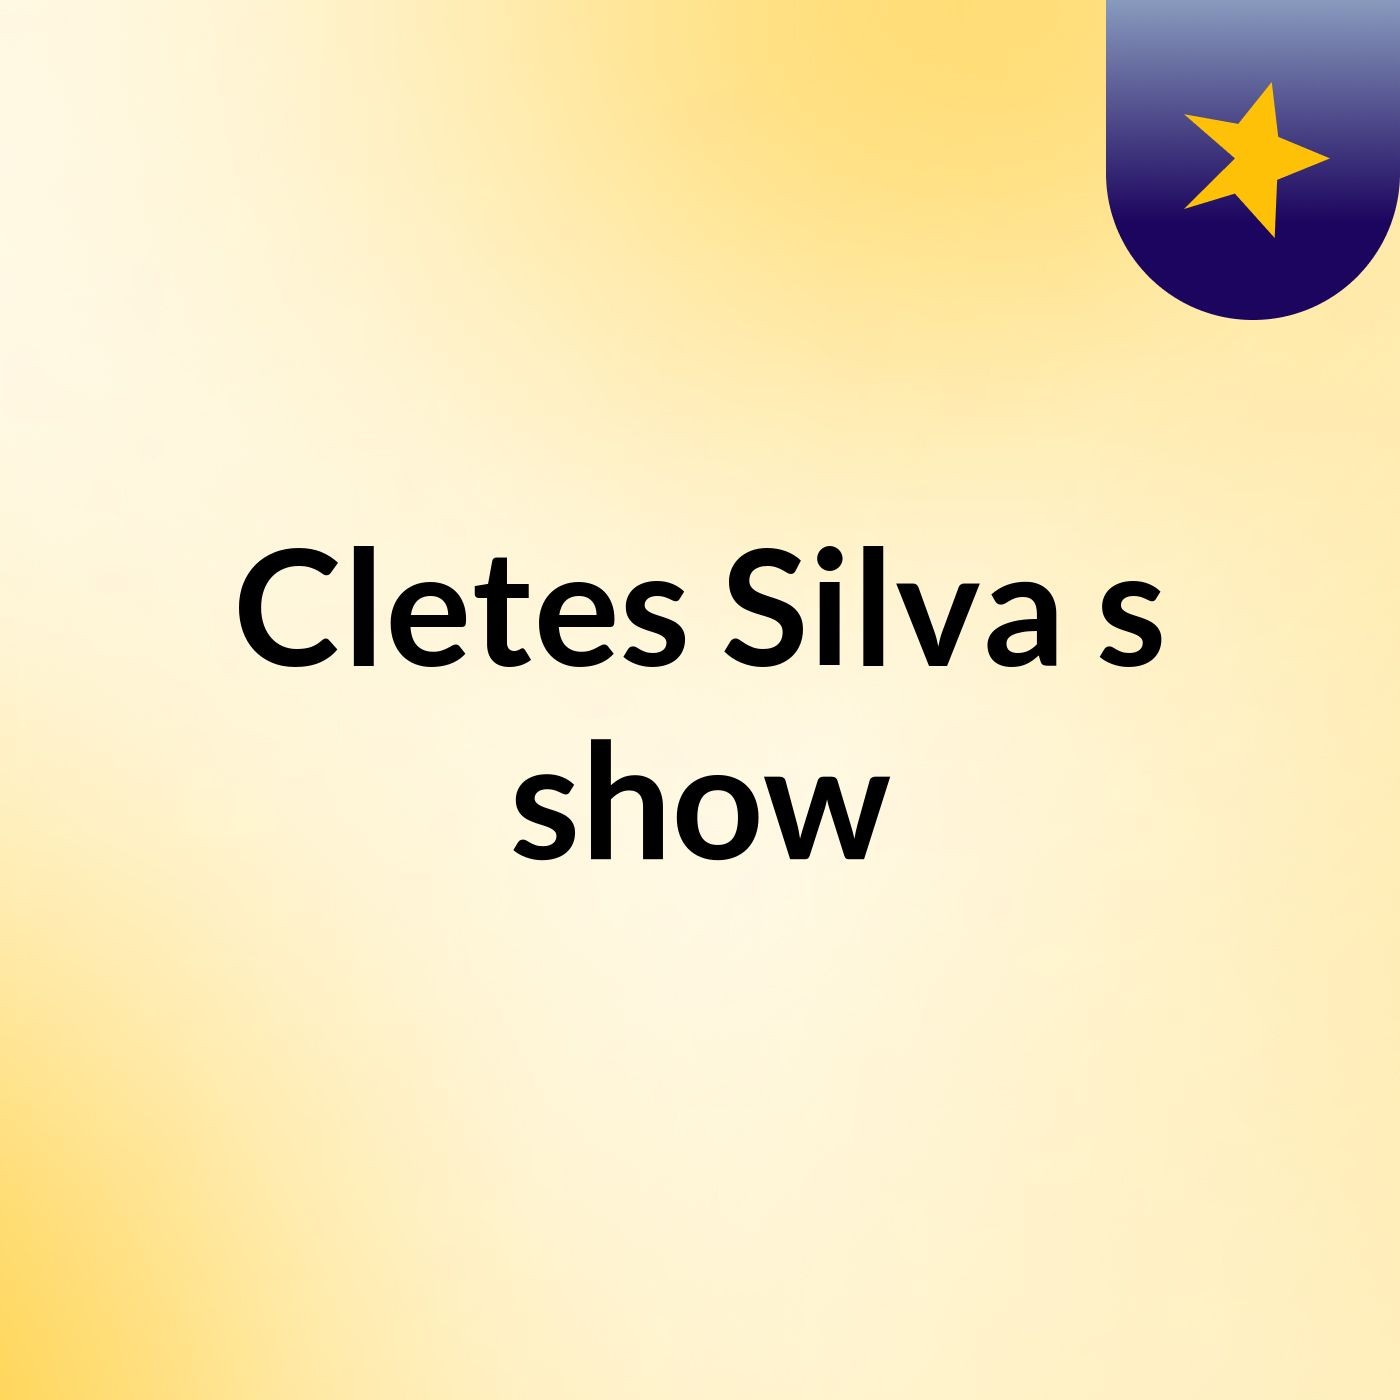 Cletes Silva's show